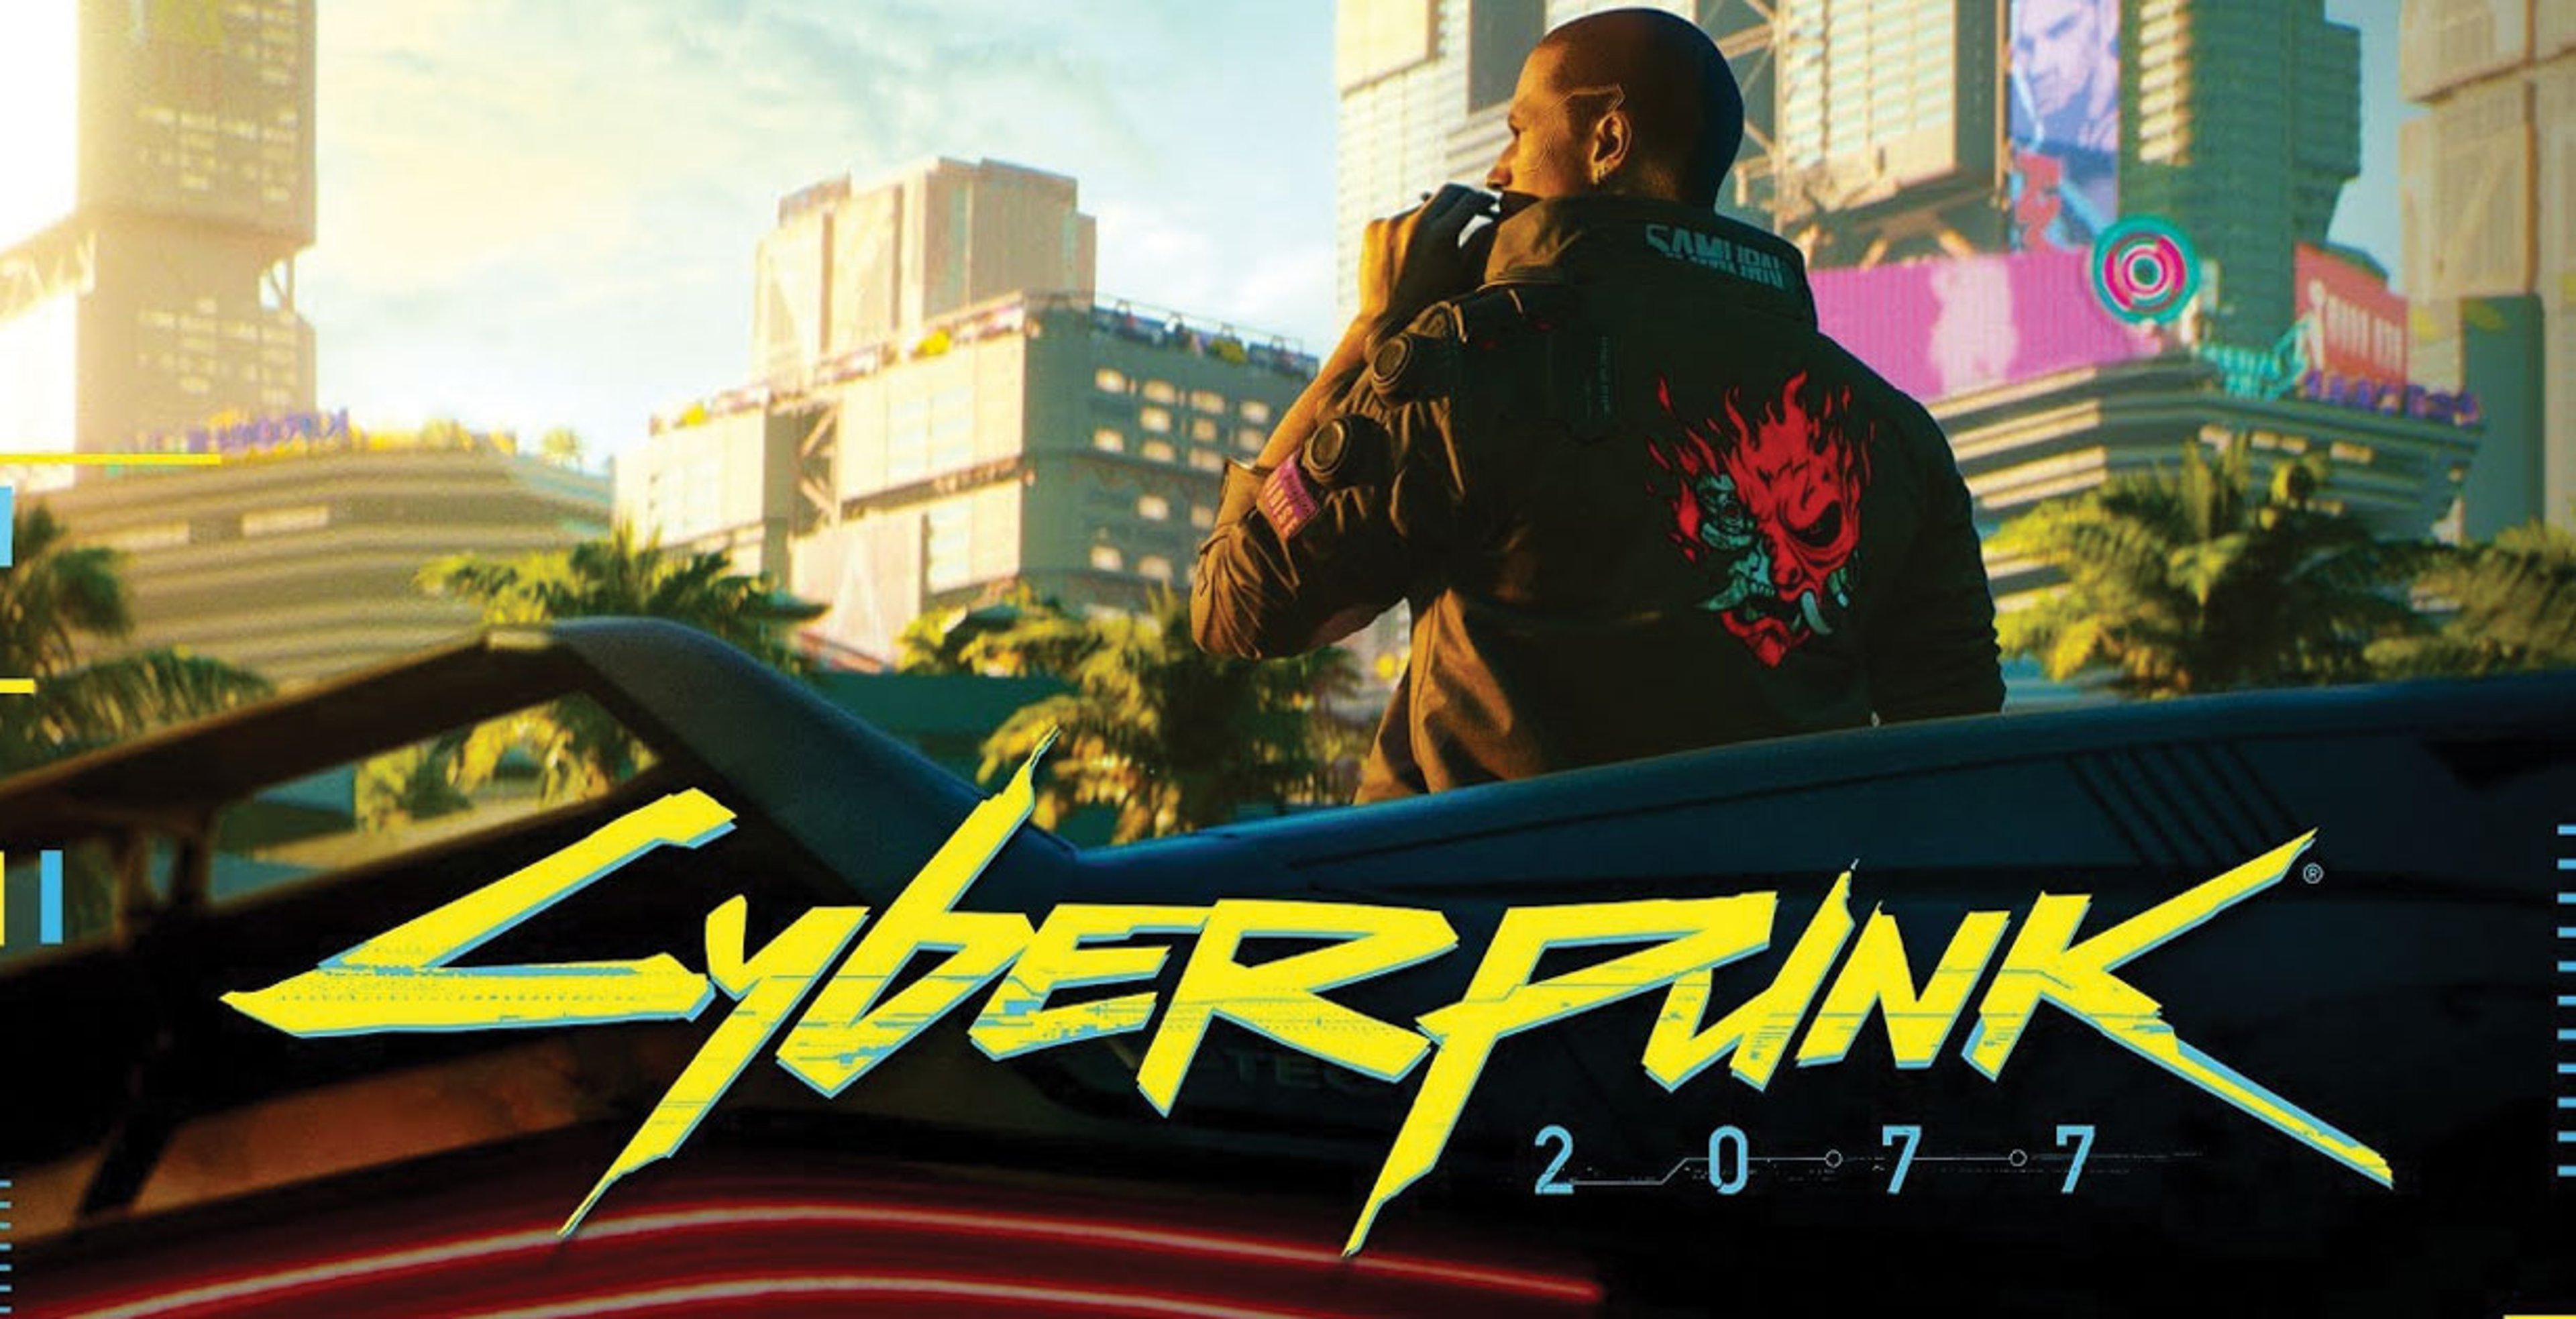 Cyberpunk 2077, impressioni dalla demo dell’E3 2018 – Anteprima